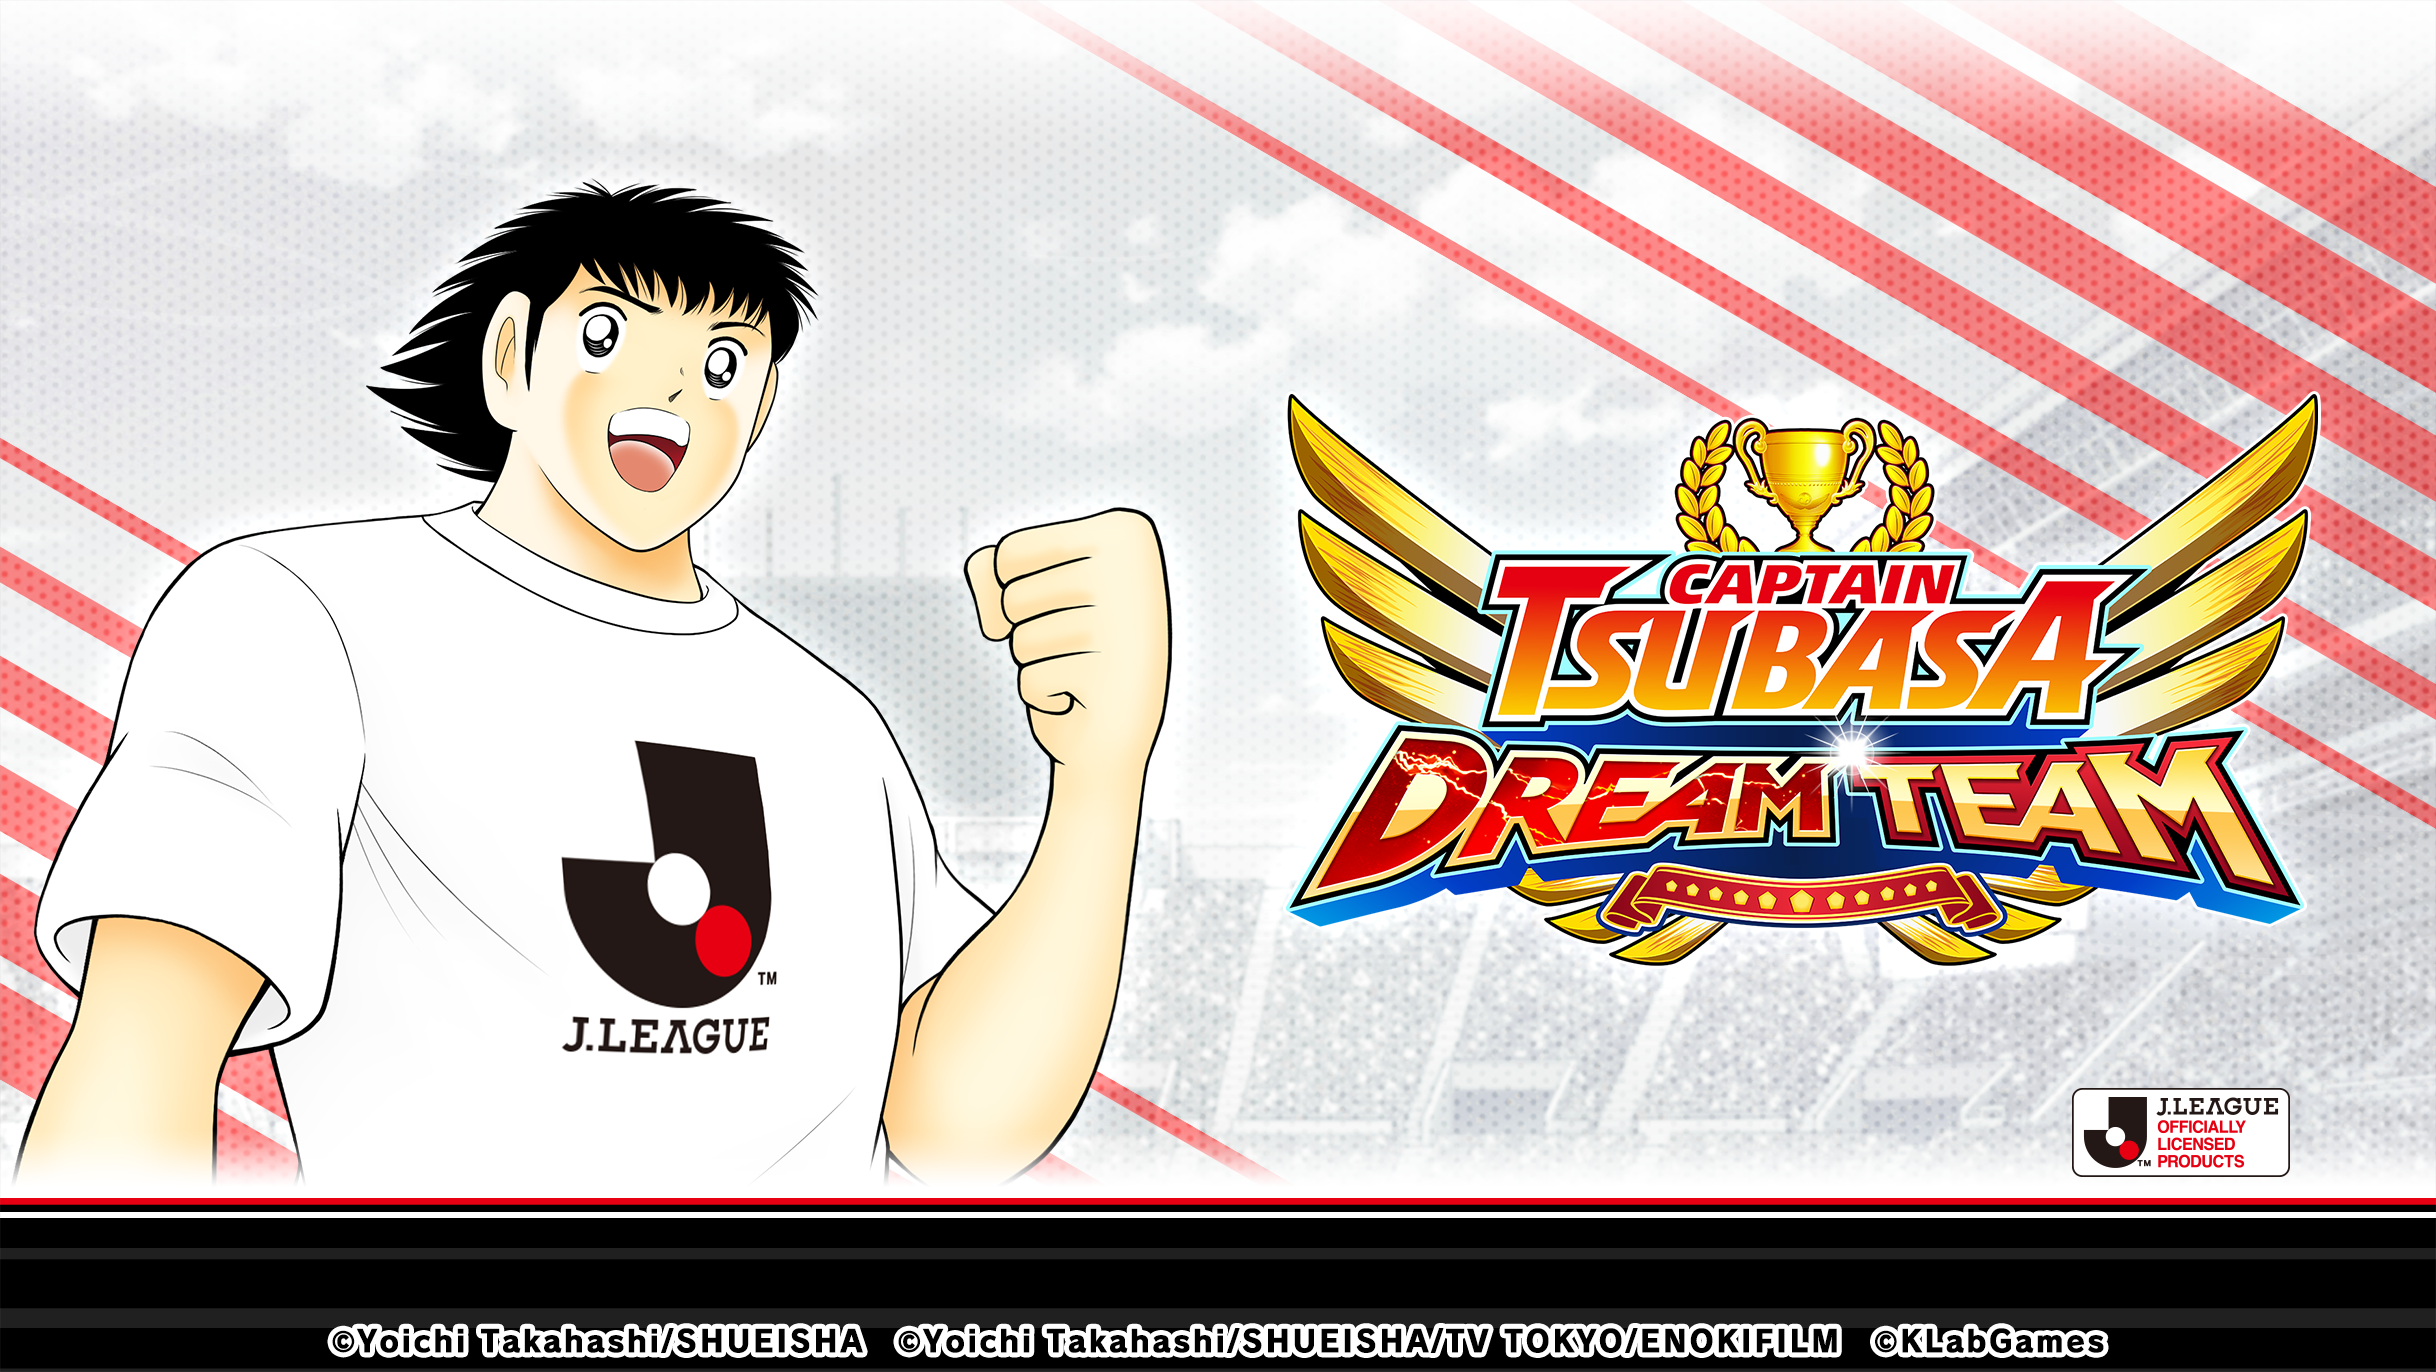 เกม “กัปตันซึบาสะ: ดรีมทีม (Captain Tsubasa: Dream Team)” เปิดตัวตัวละครผู้เล่นใหม่ นิตตะ ชุน ในชุดยูนิฟอร์มทางการ J.League 2022!